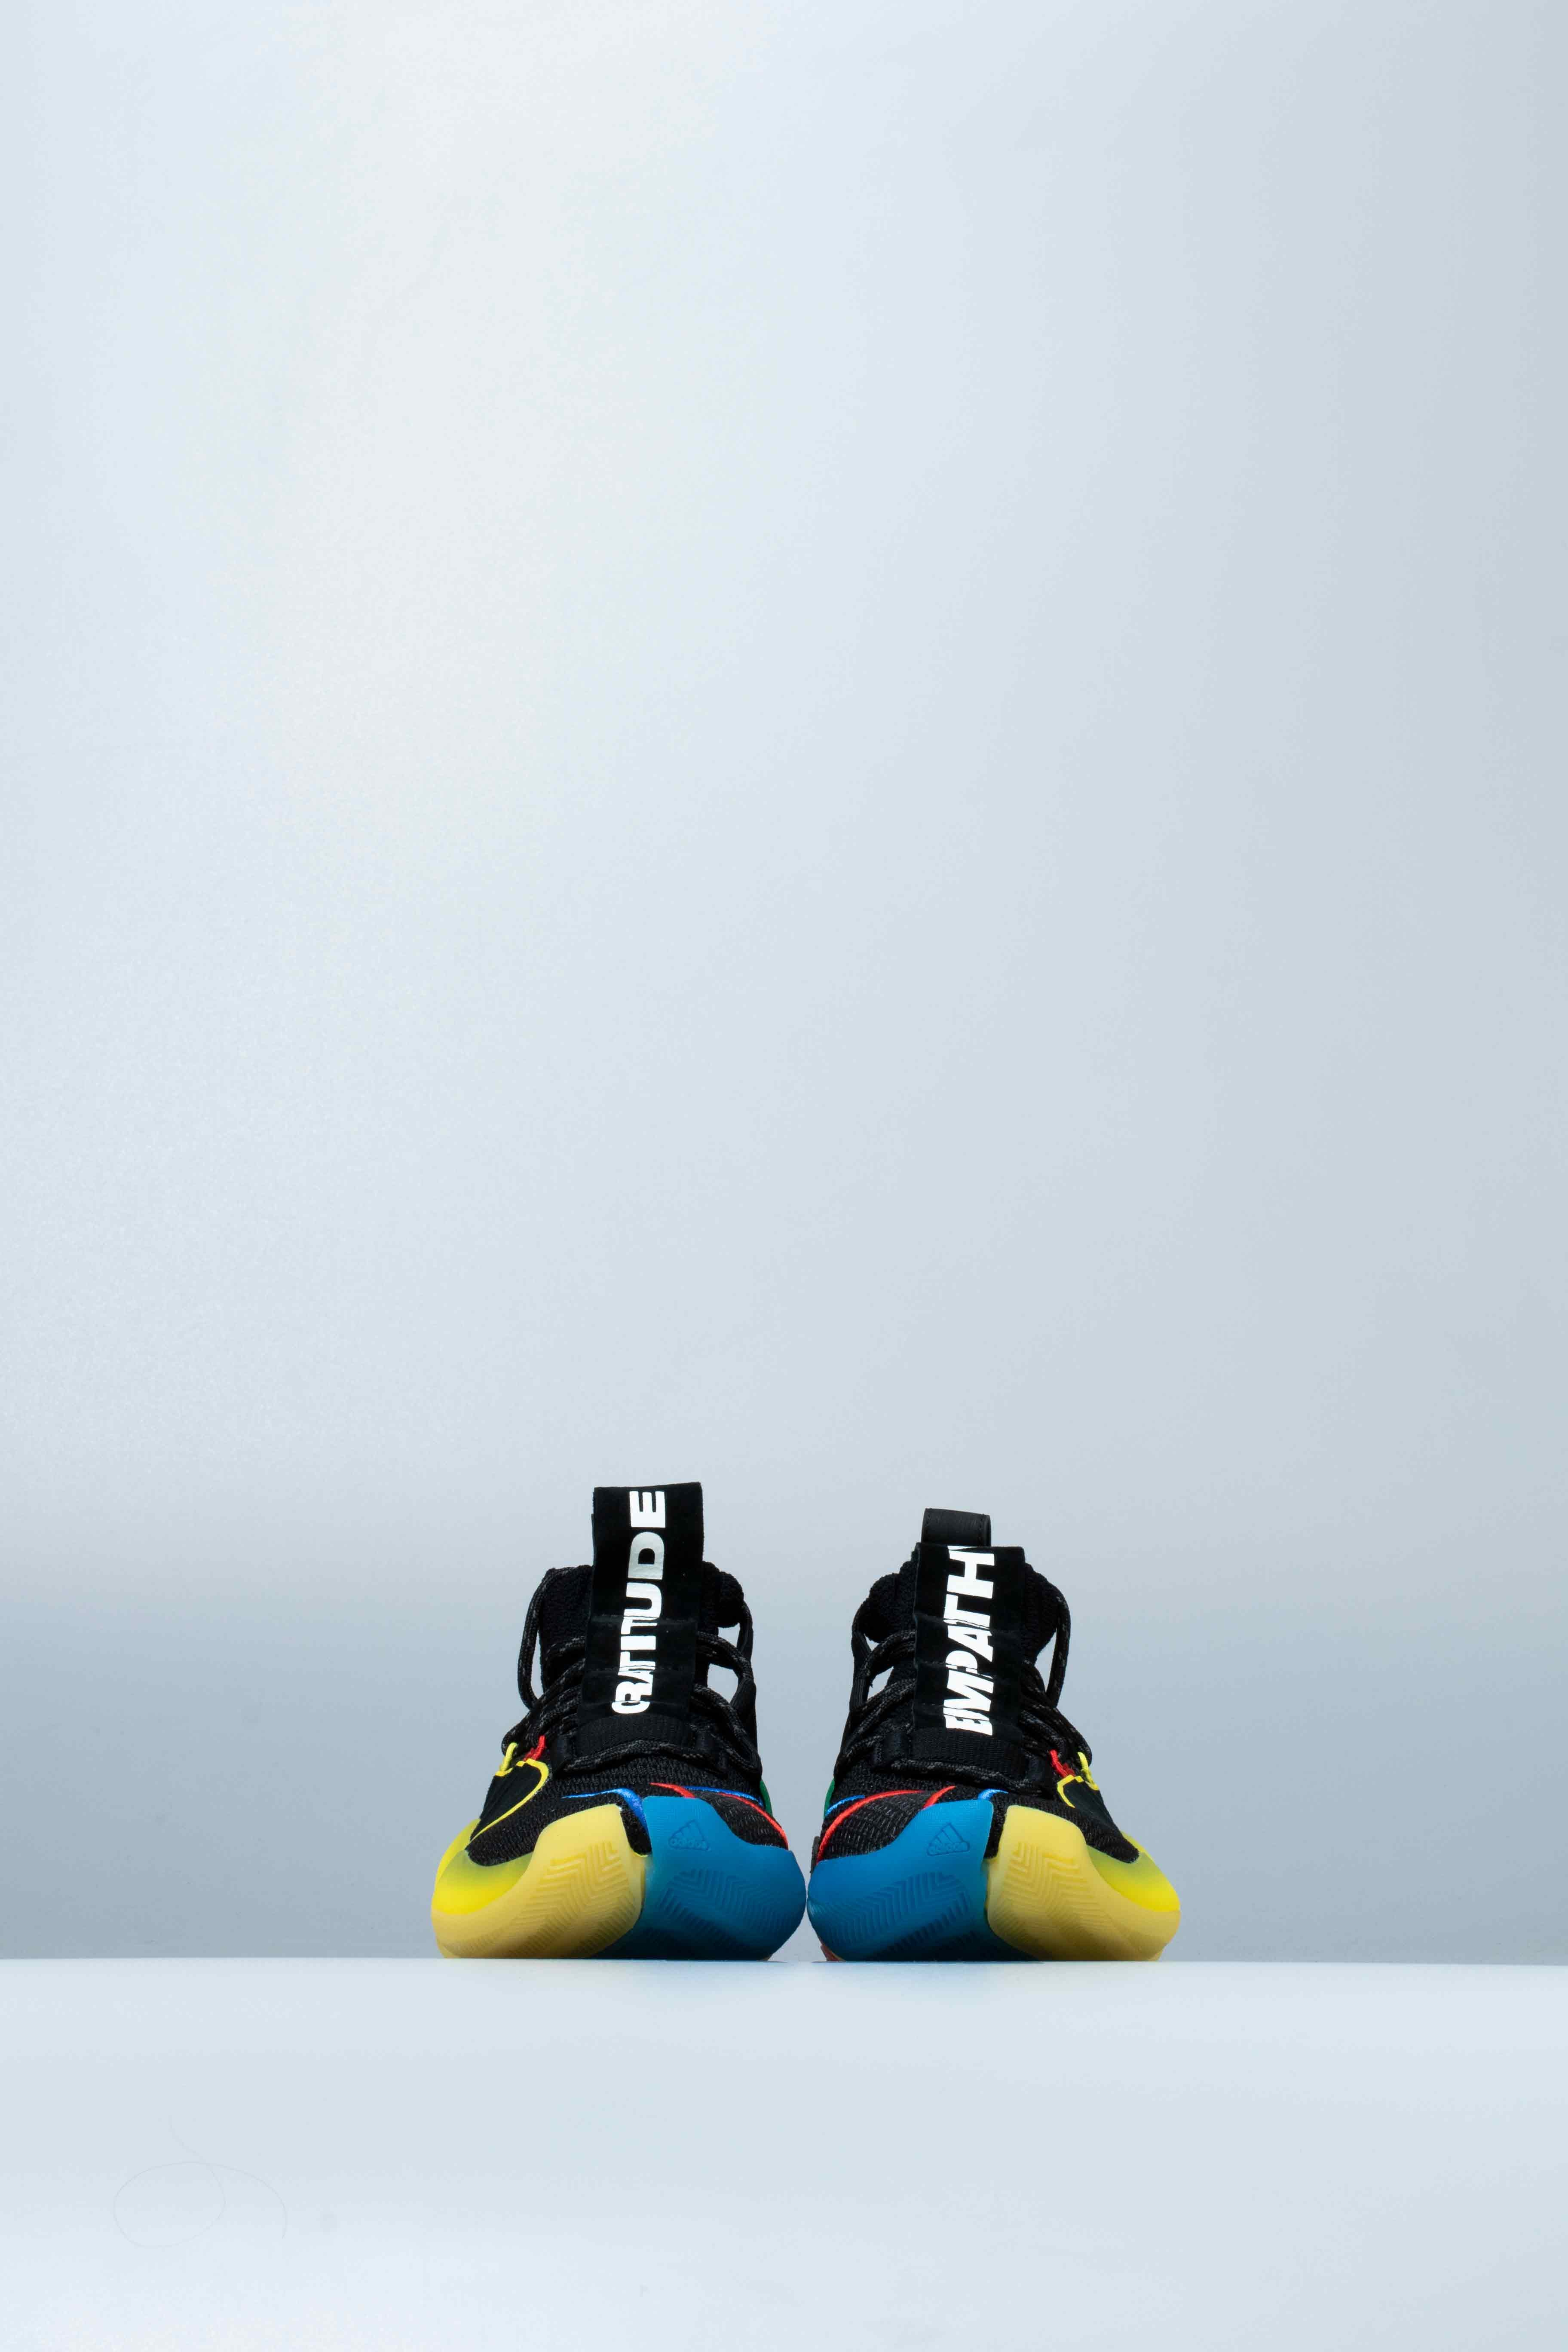 Adidas Consortium G27805 Pharrell Williams Crazy BYW Gratitude Empathy Shoe - – ShopNiceKicks.com